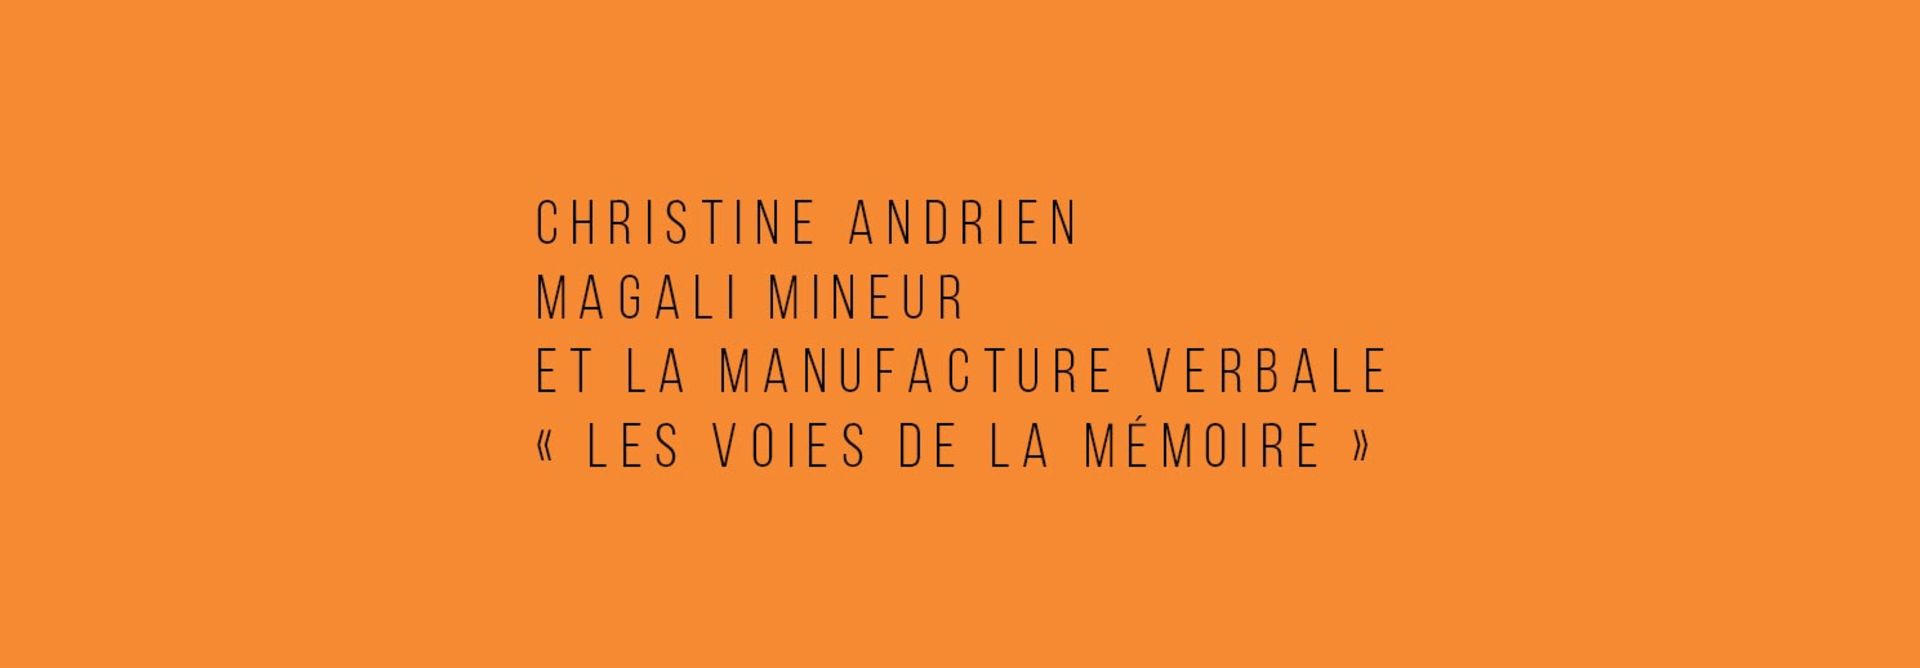 Christine Andrien, Magali Mineur et La Manufacture verbale